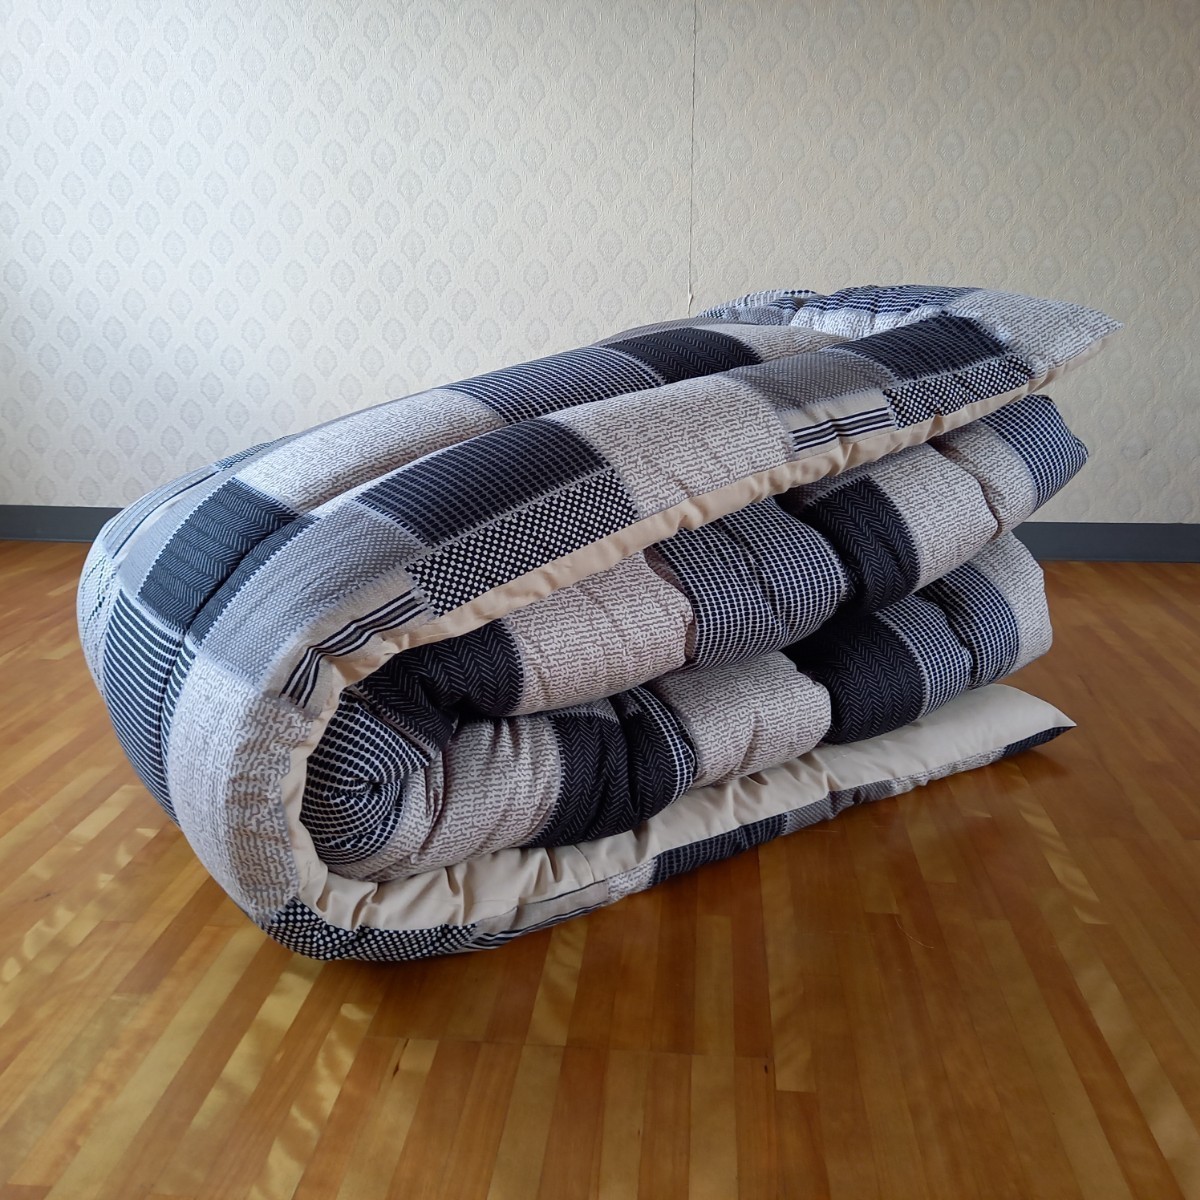 . котацу futon толщина .. объем модель хлопок 100% большой размер прямоугольный черный ① сделано в Японии ( котацу futon пуховый футон ватное одеяло матрас футон . futon подушка )